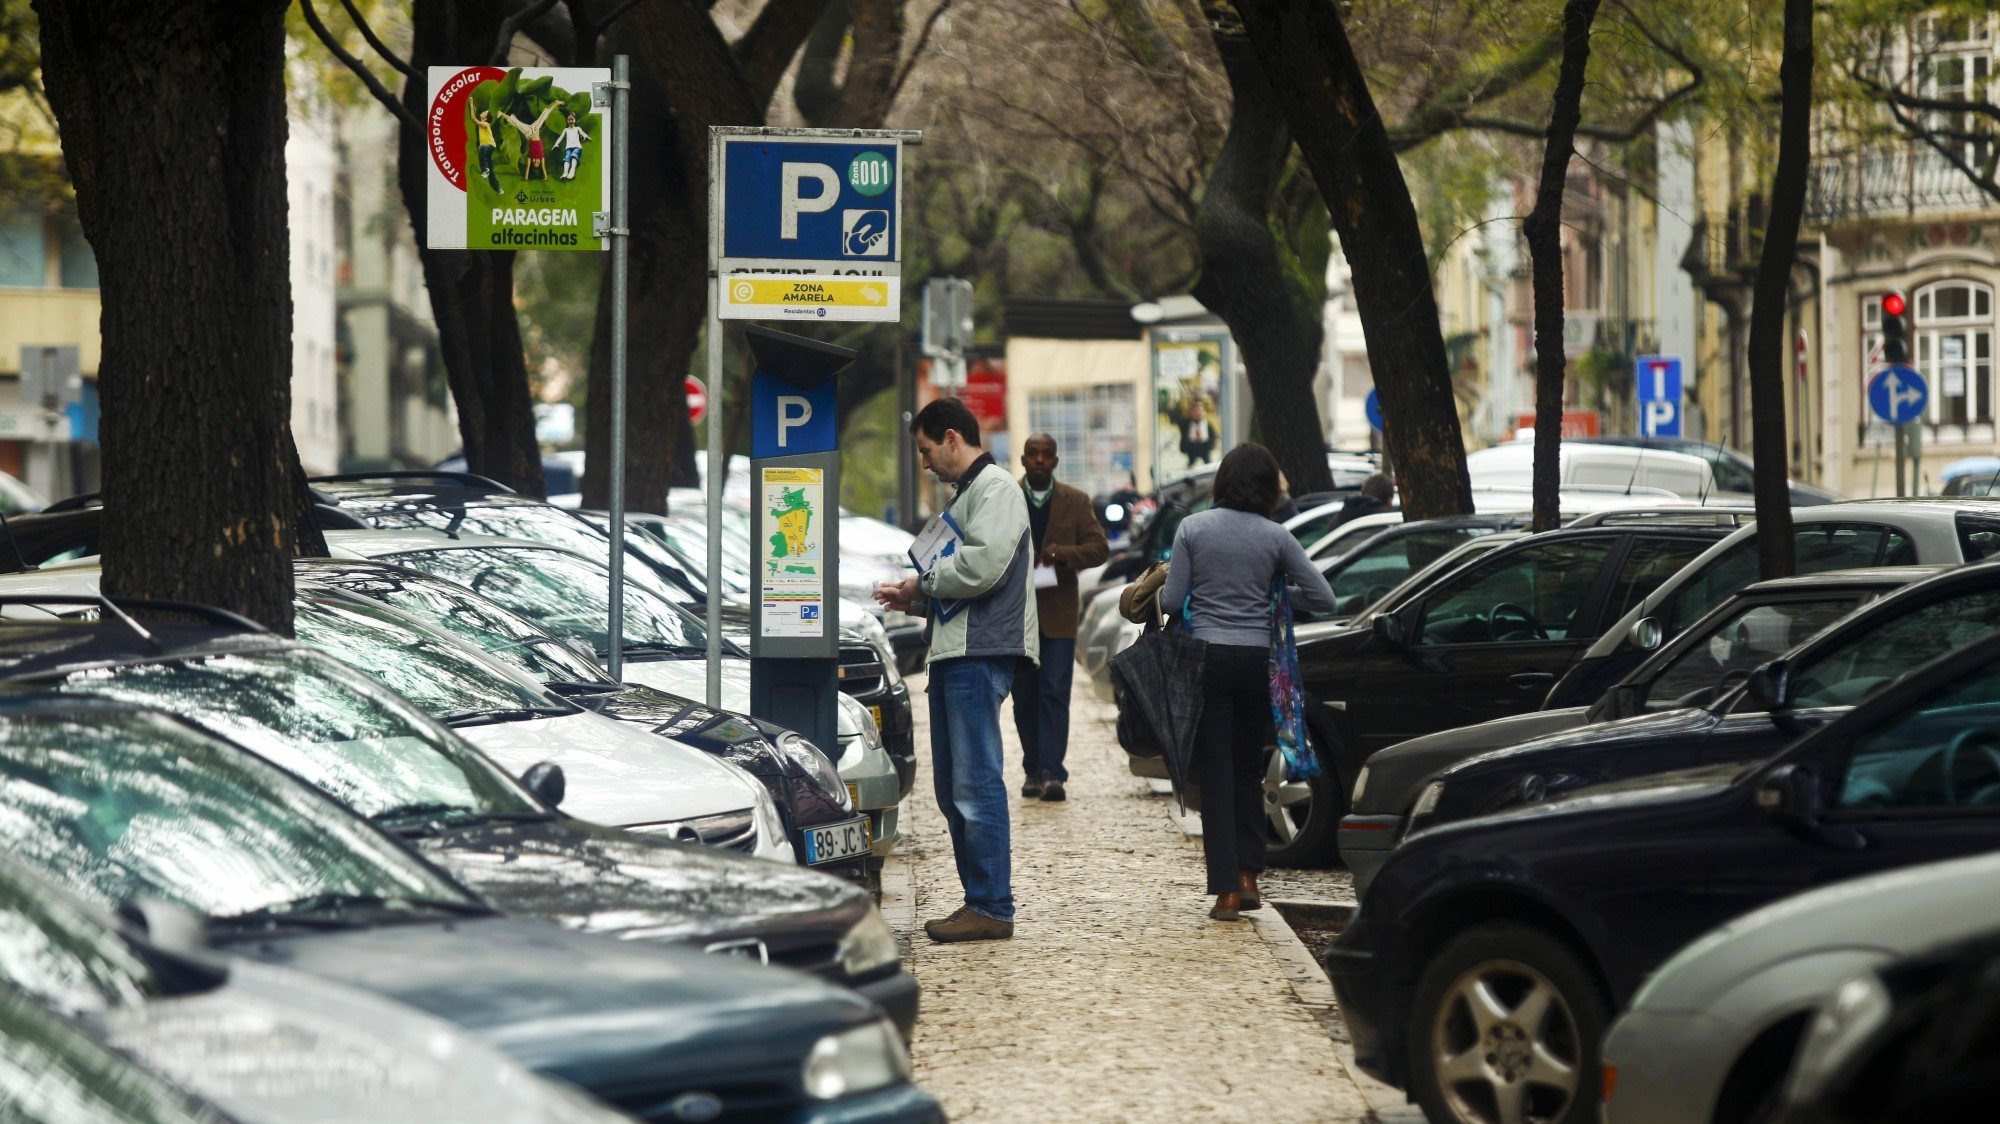 Em 2019, a Empresa Municipal de Mobilidade e Estacionamento de Lisboa anunciou que ia apresentar até ao final desse ano um estudo sobre o estacionamento na cidade